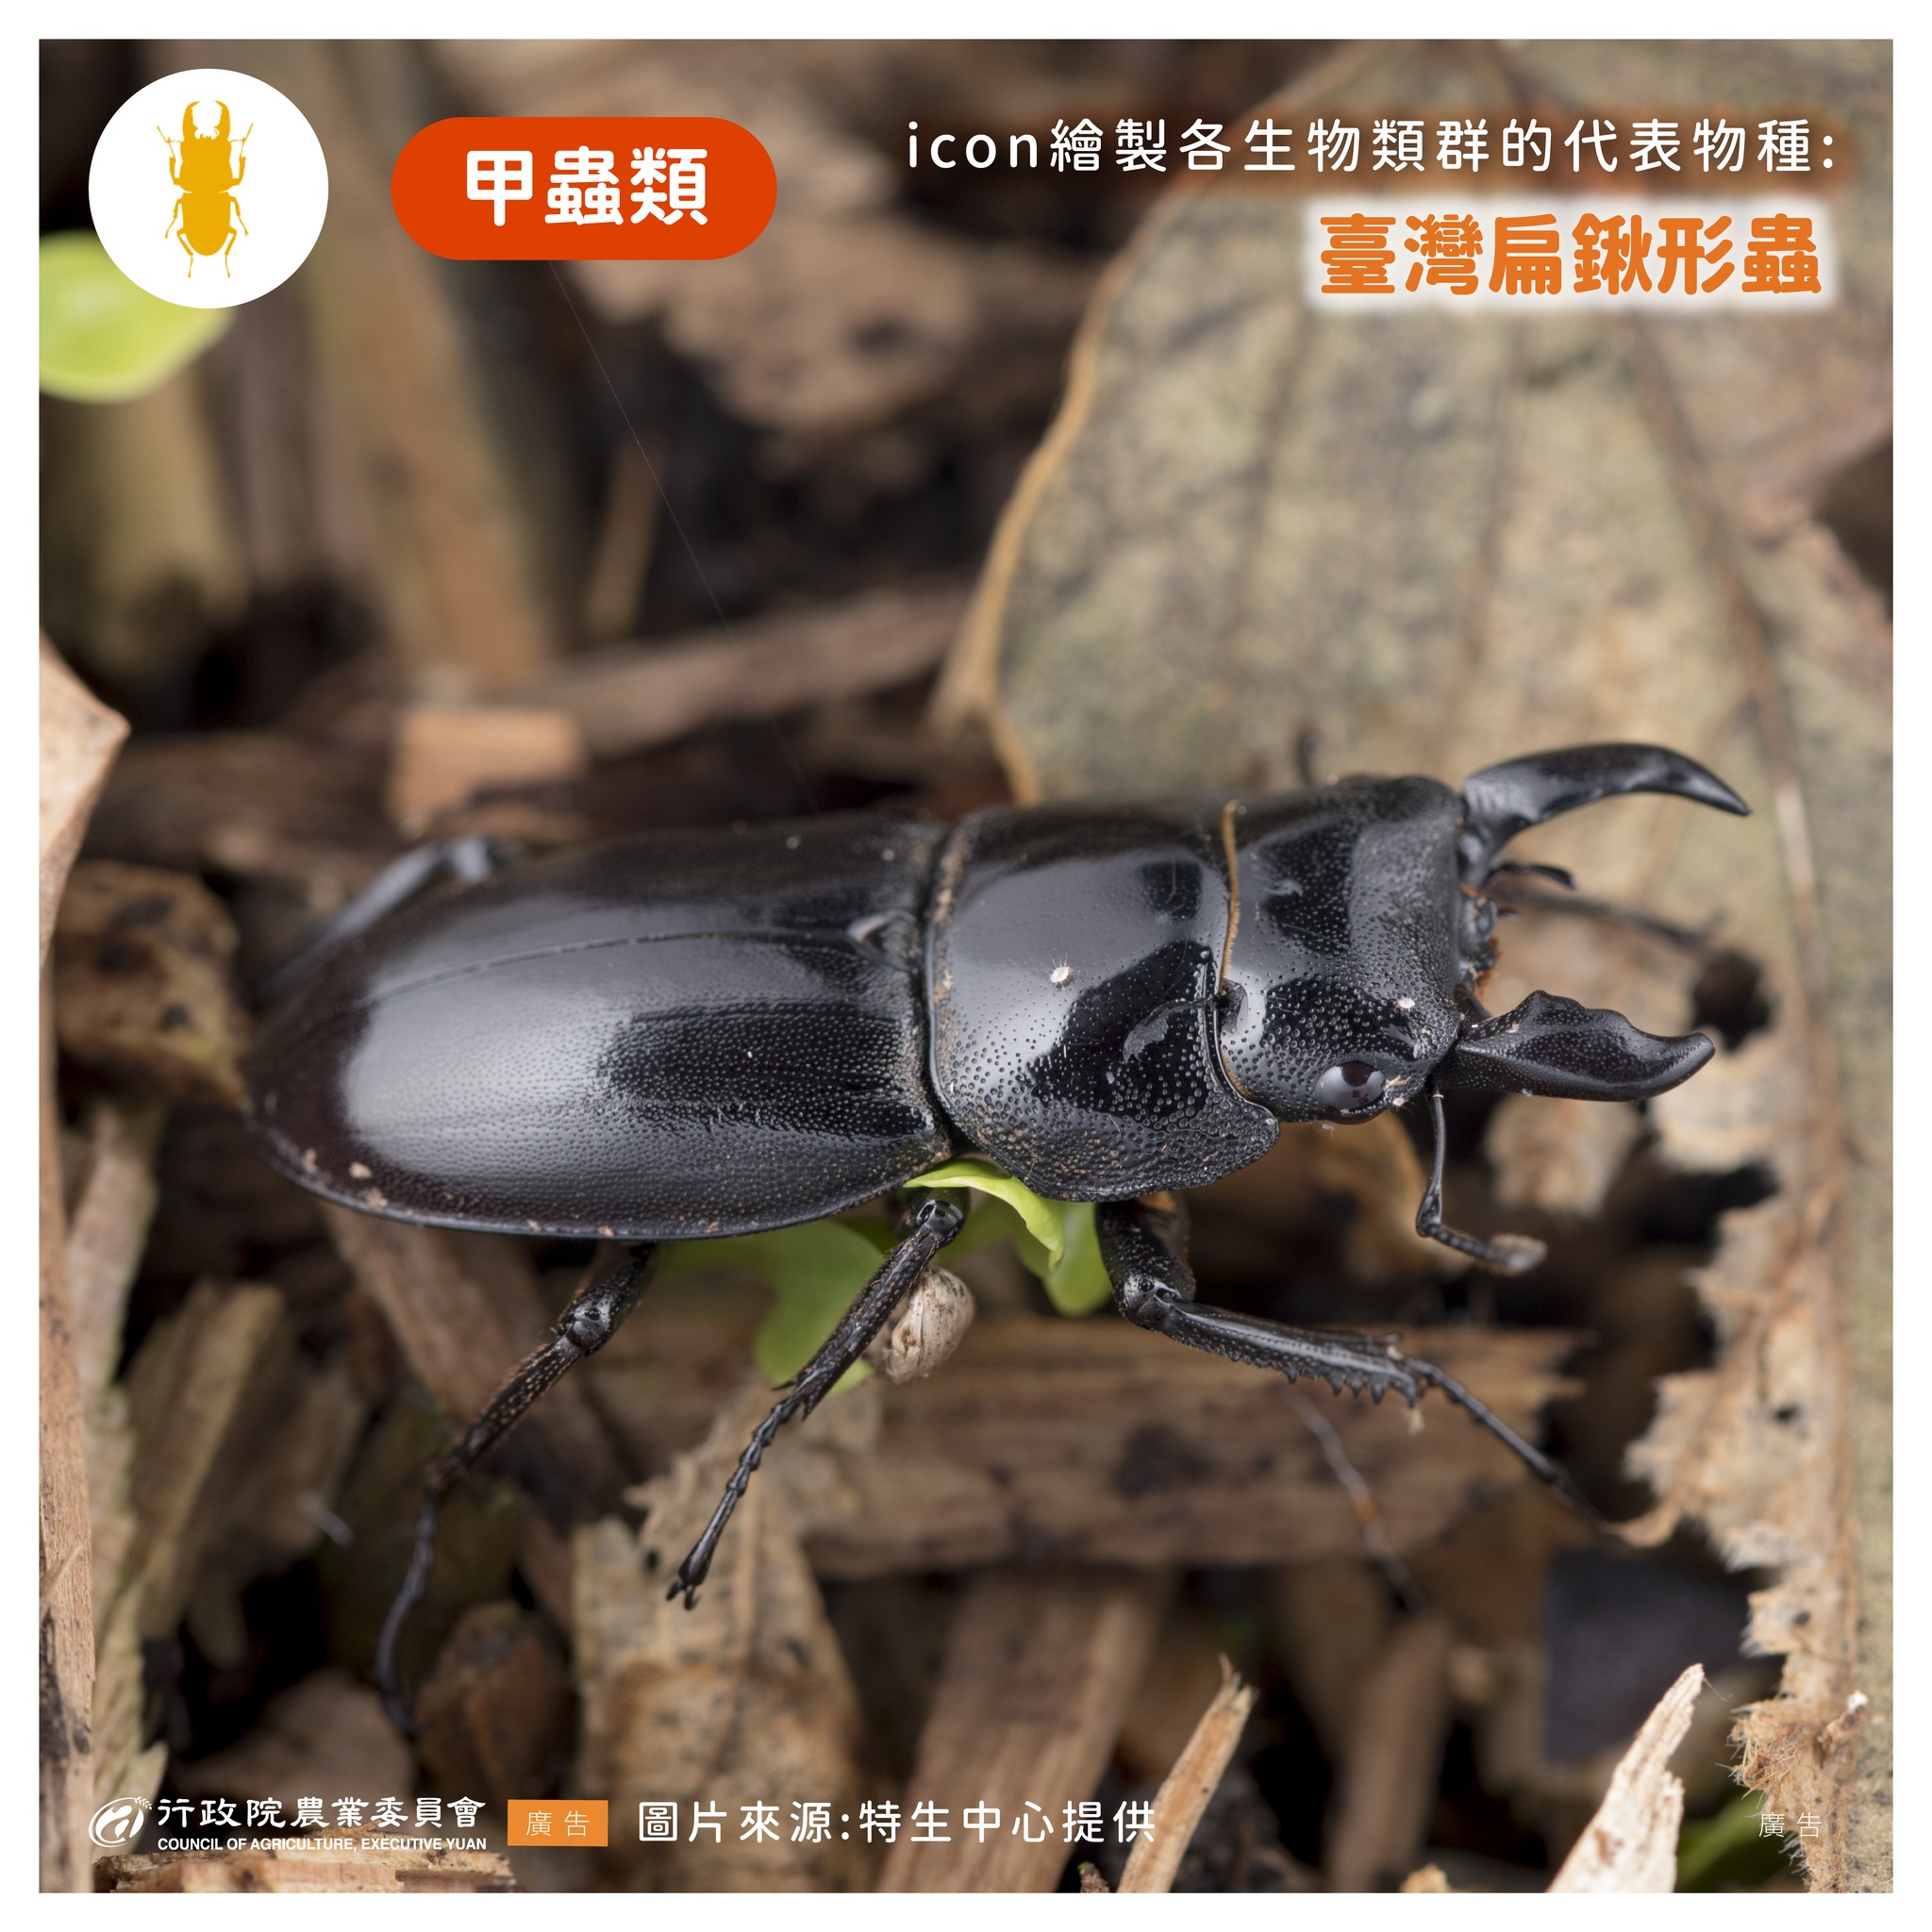 13.台灣扁鍬形蟲